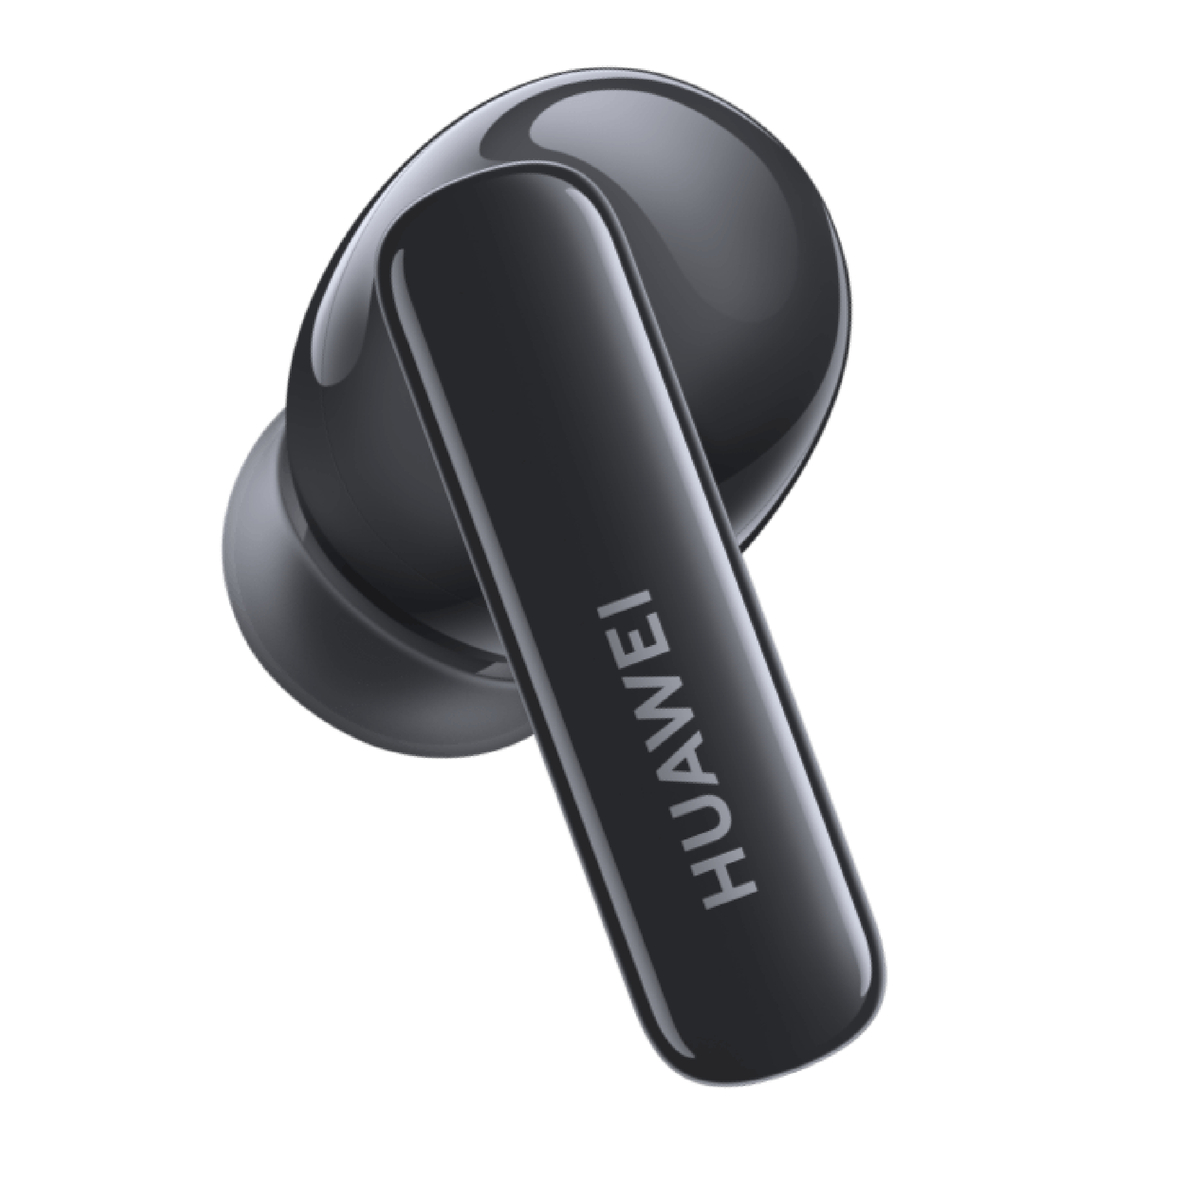 Huawei Freebuds 5i Bluetooth True Wireless Earbuds, Nebula Black